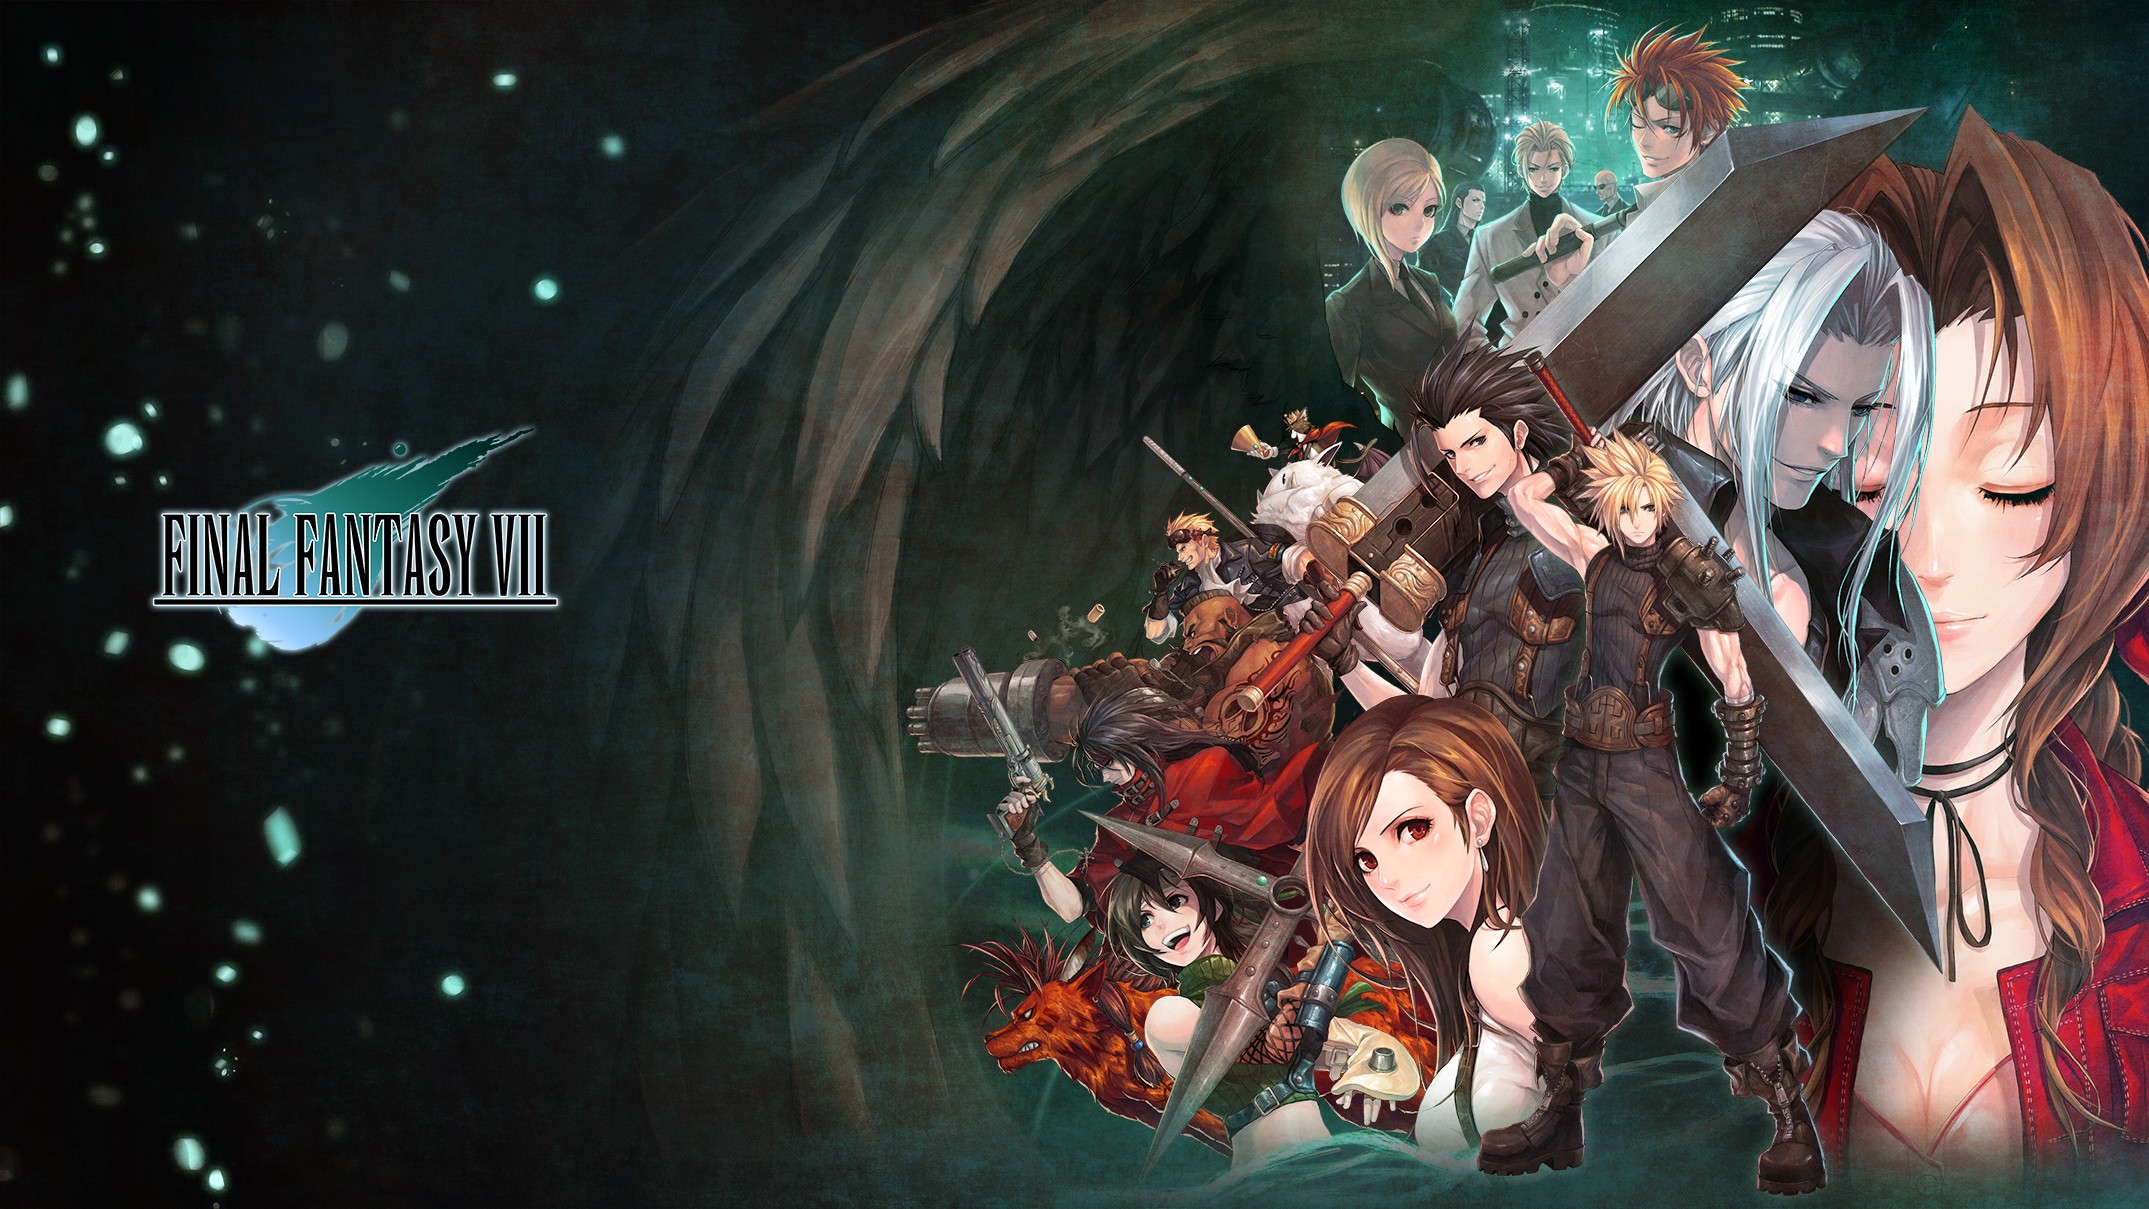 Final Fantasy Vii Artwork Video Games Zack Fair Aerith Gainsborough Cloud Strife Sephiroth Tifa Lock 2149x1209